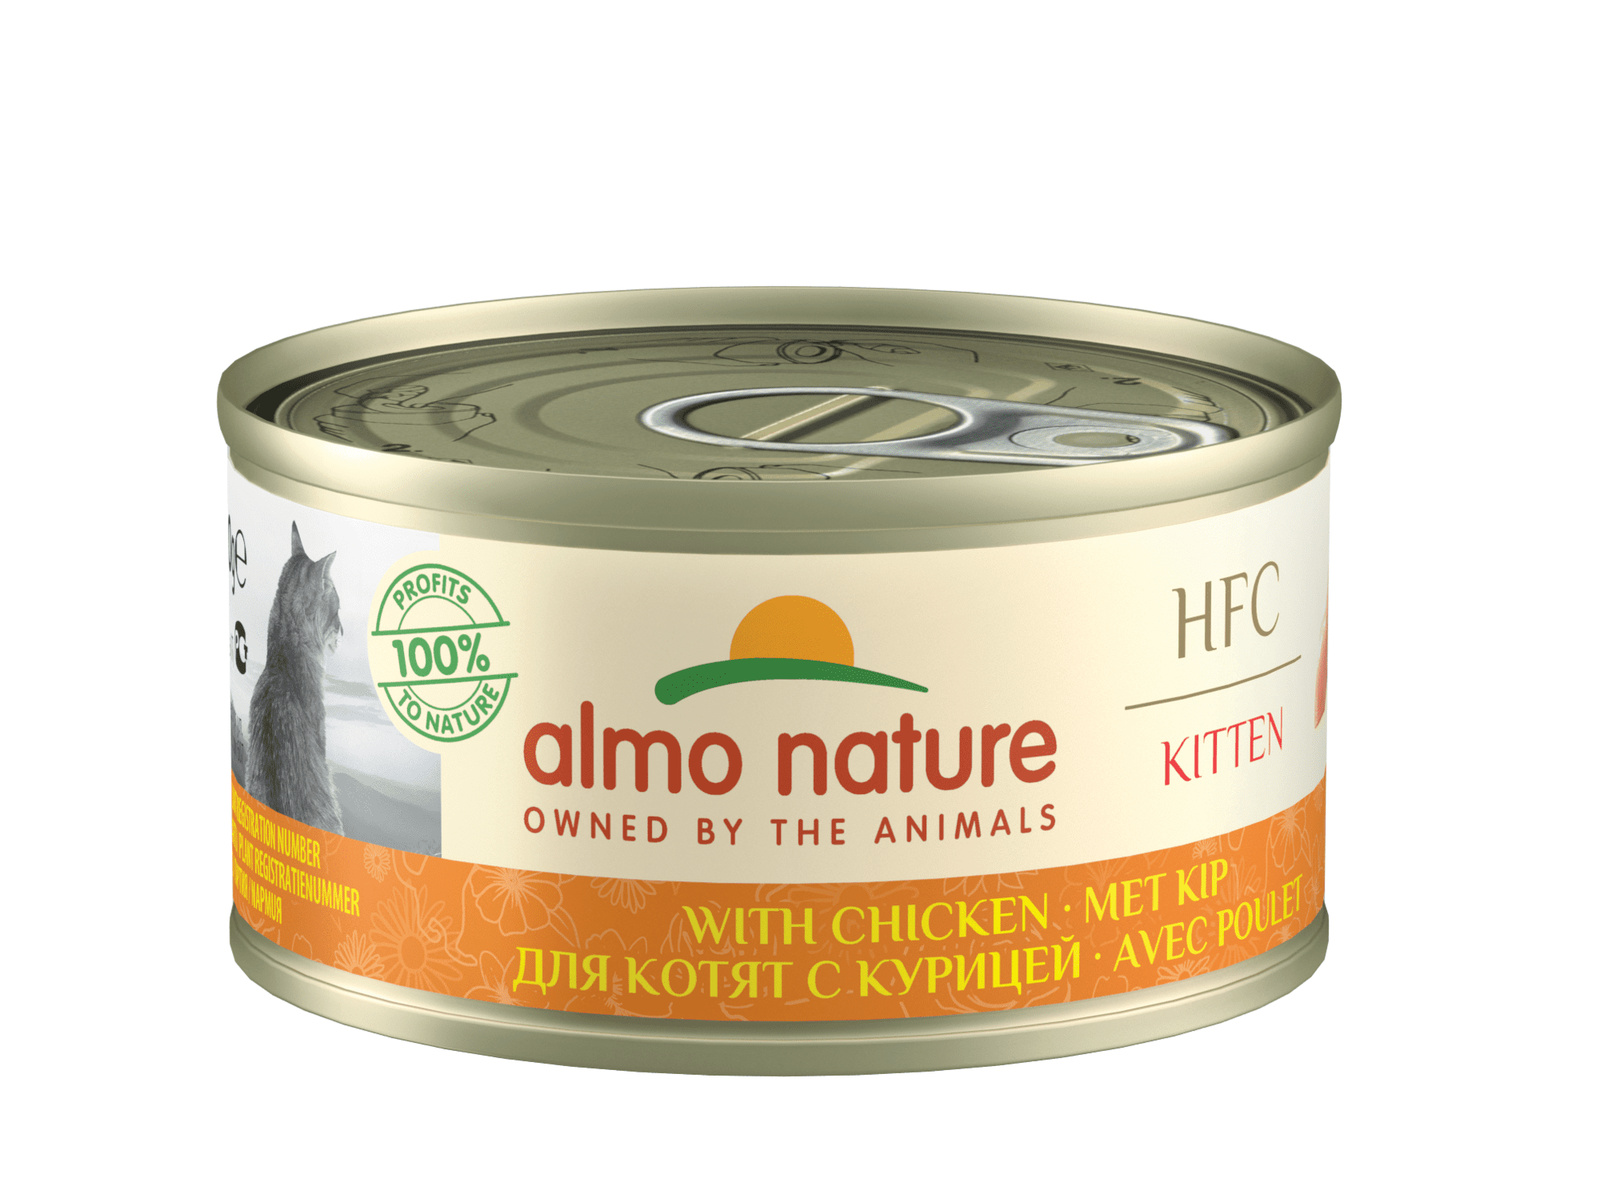 Almo Nature консервы Almo Nature консервы для котят, с курицей (70 г) almo nature консервы almo nature консервы полнорационные для котят с курицей 24 шт по 150 г